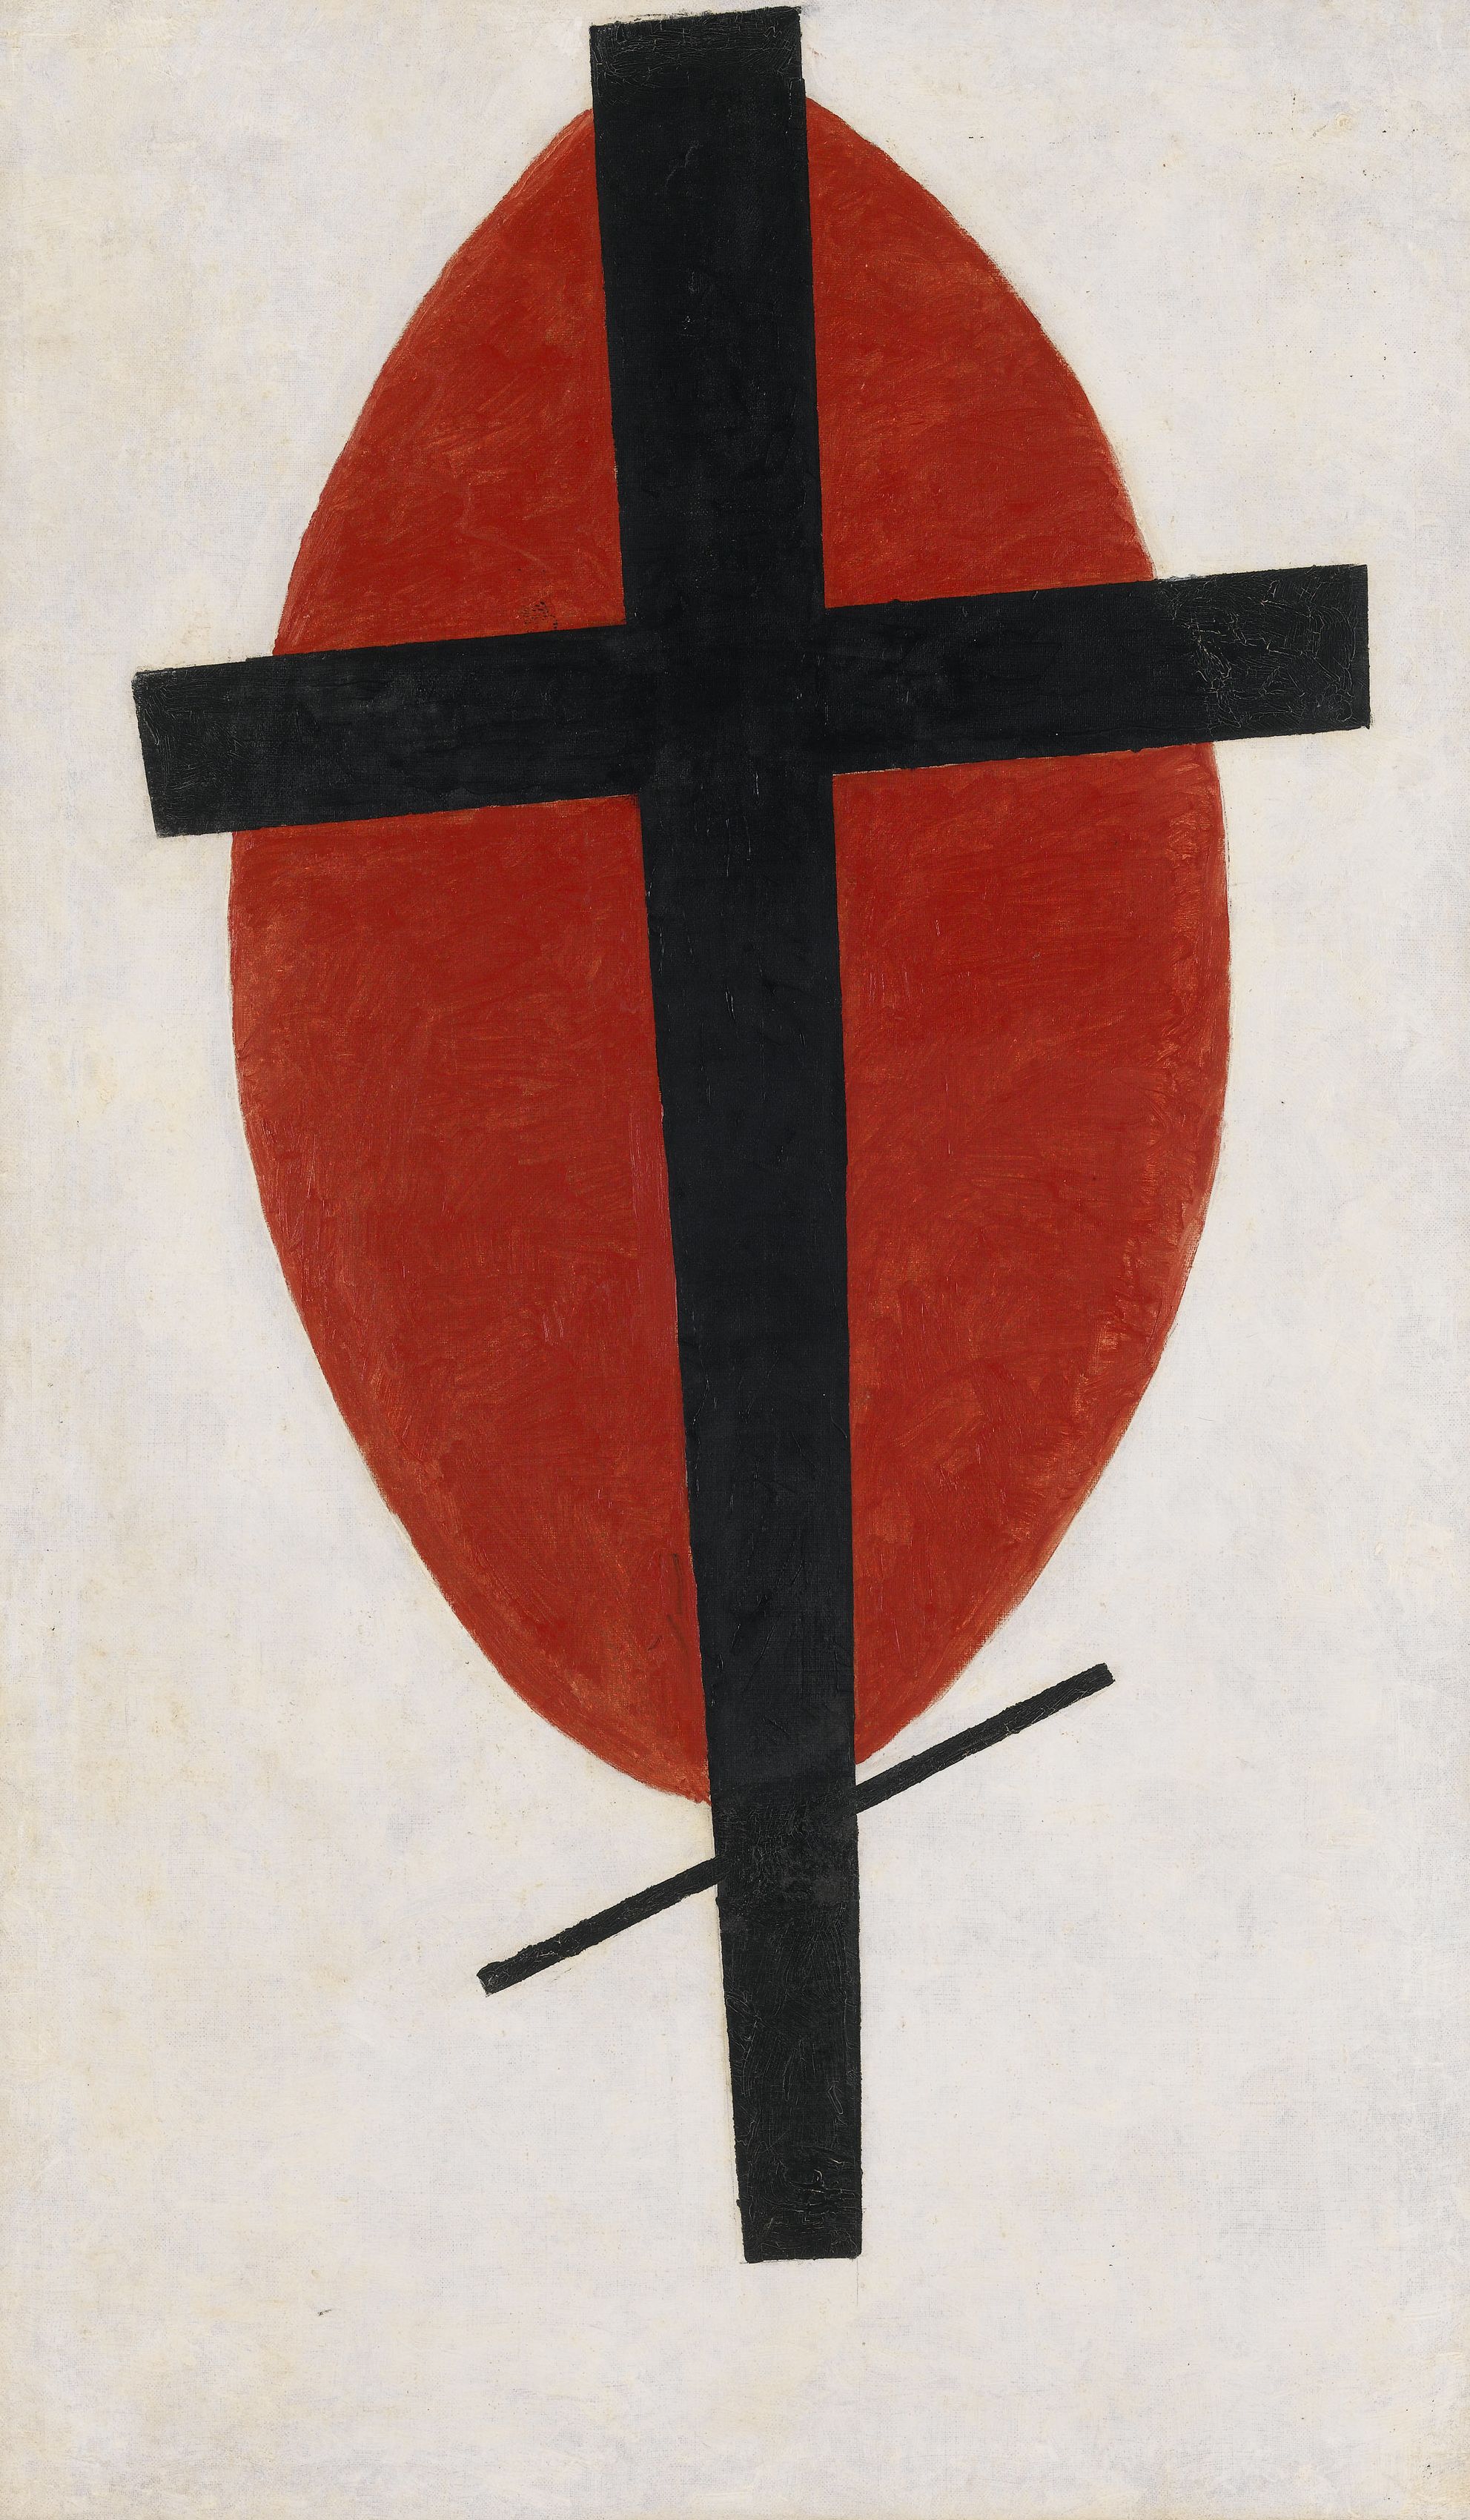 神秘的至上主義 (紅色橢圓上的黑色十字架) by Kazimir Malevich - 1920-22年 - 100.2 x 59.2 公分 